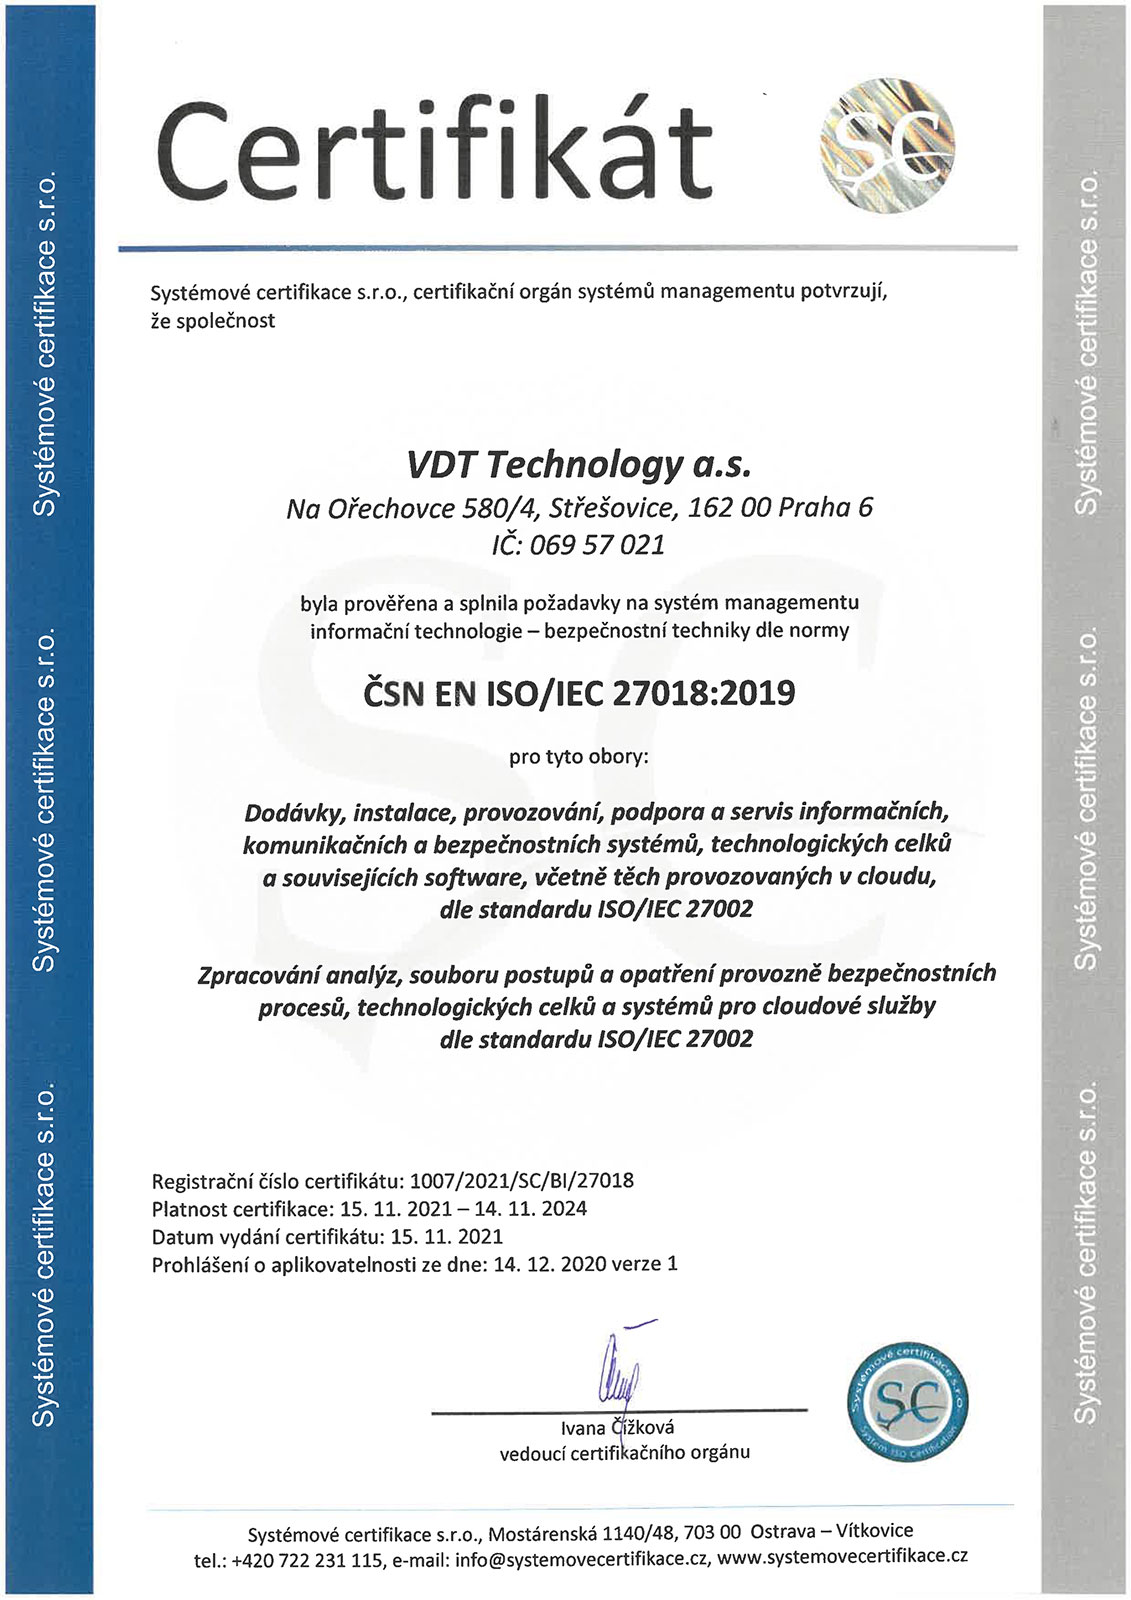 Certificate ČSN EN ISO/IEC 27018:2019